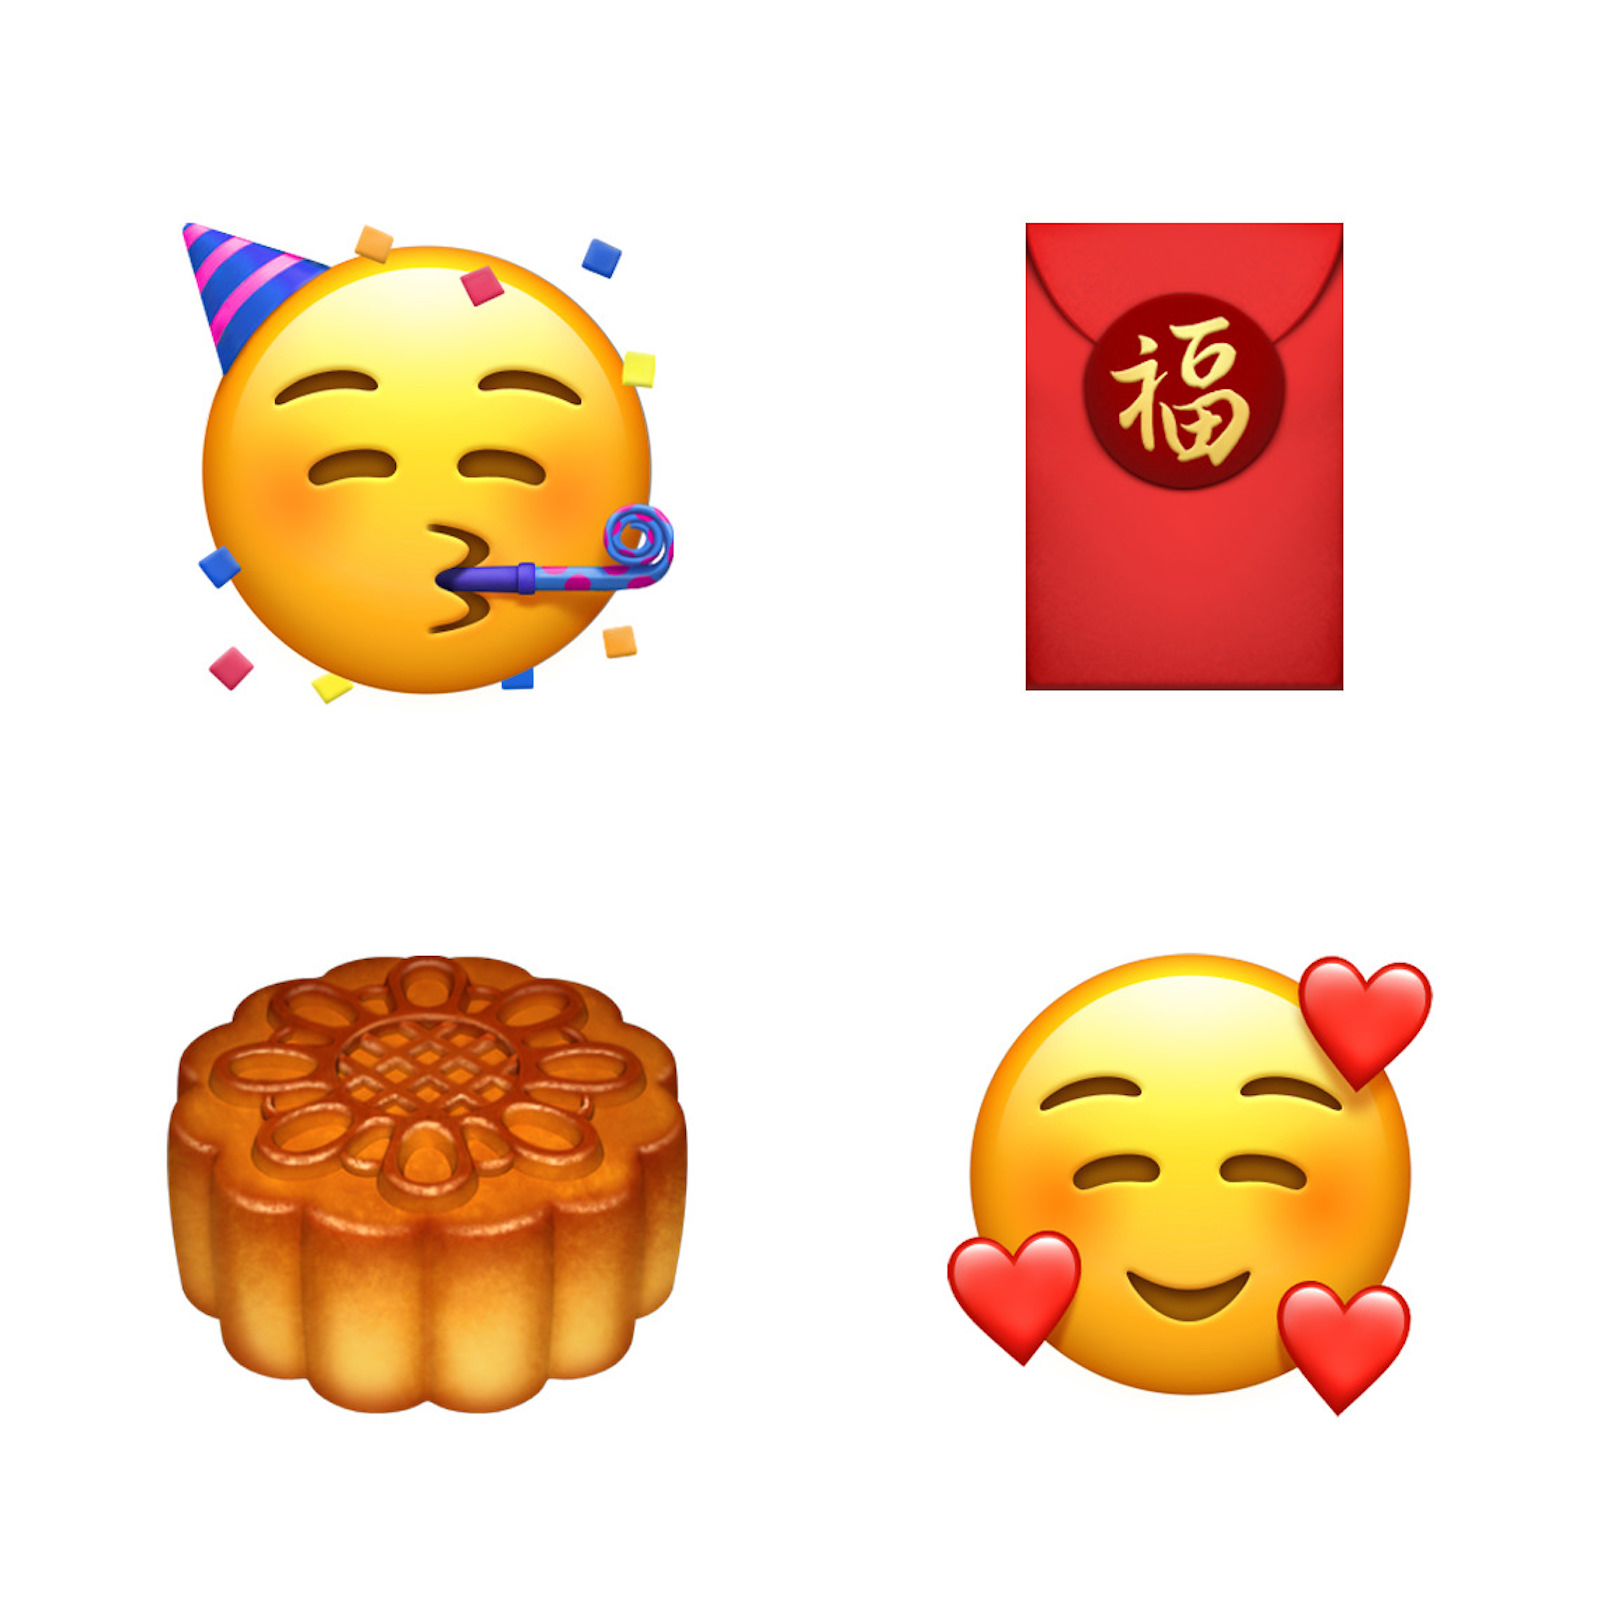 iOS-121-emoji-update-party-mooncake-love-10012018.jpg